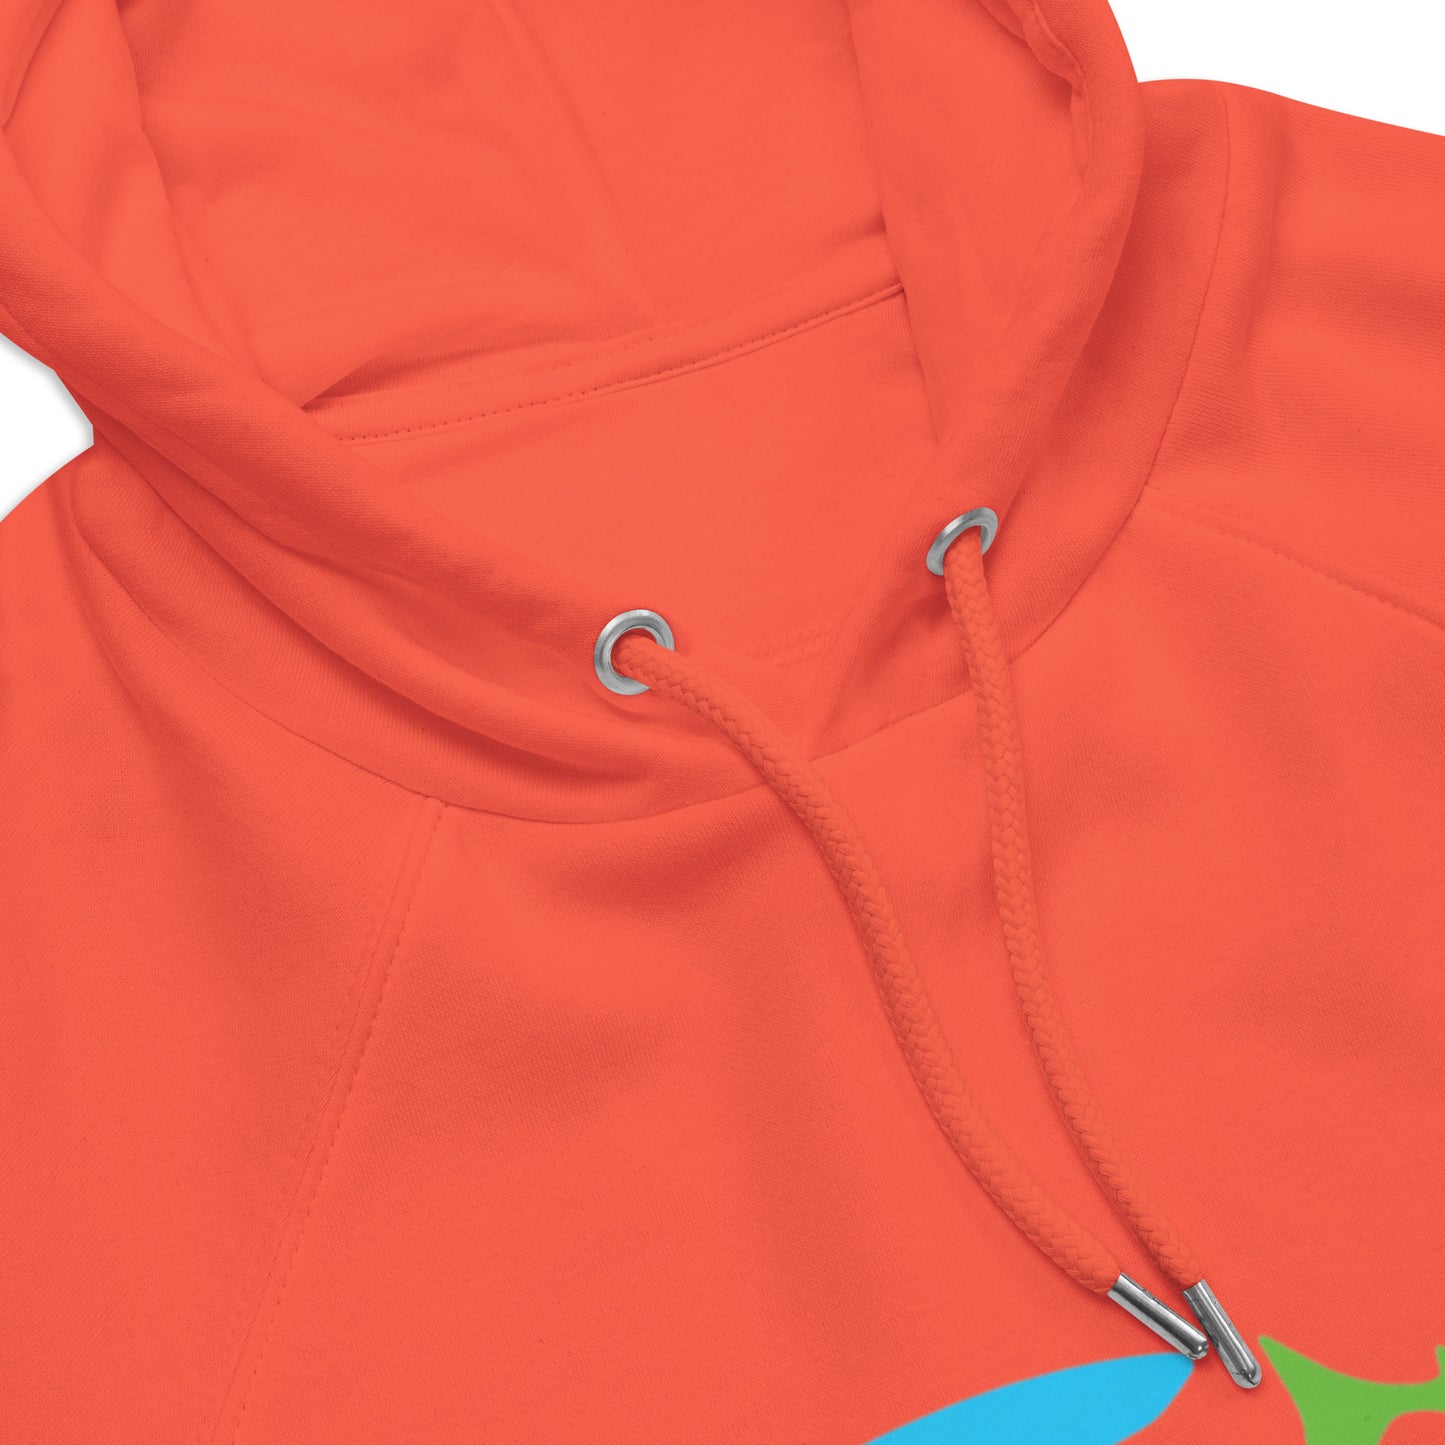 Orange Hoodie Unisex eco raglan hoodie